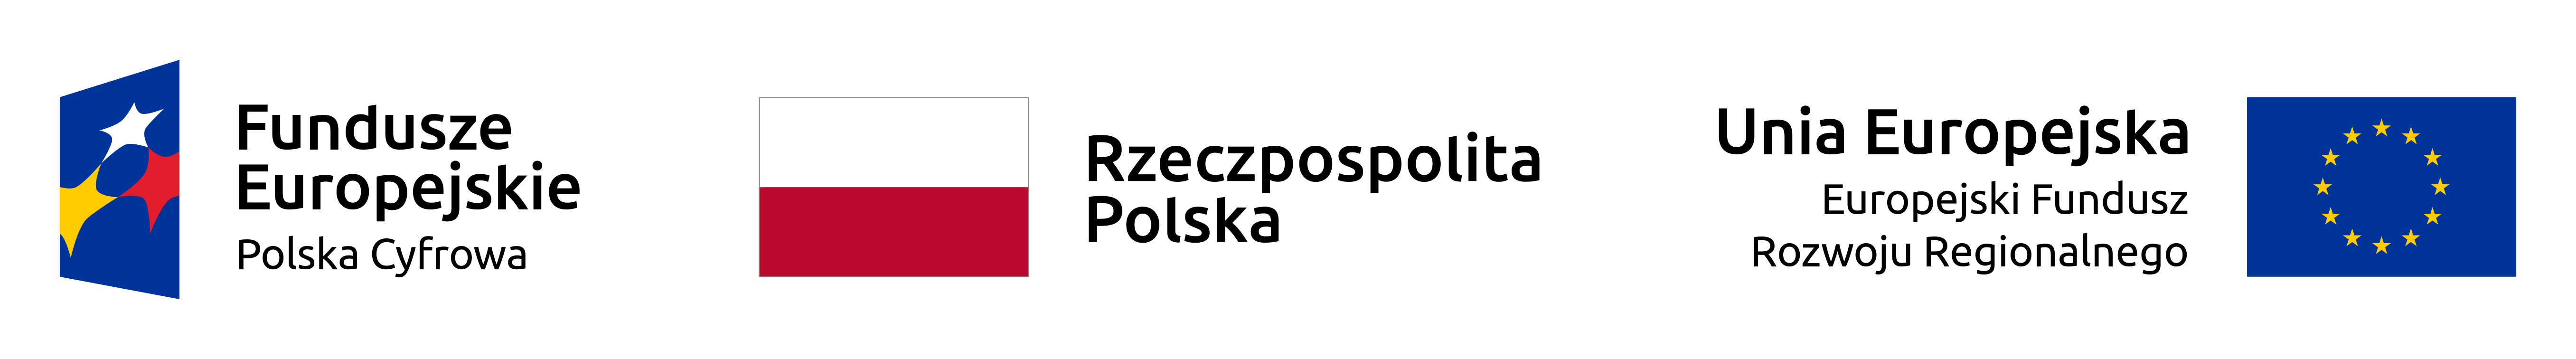 Logotyp Funduszy Europejskich Polska Cyfrowa